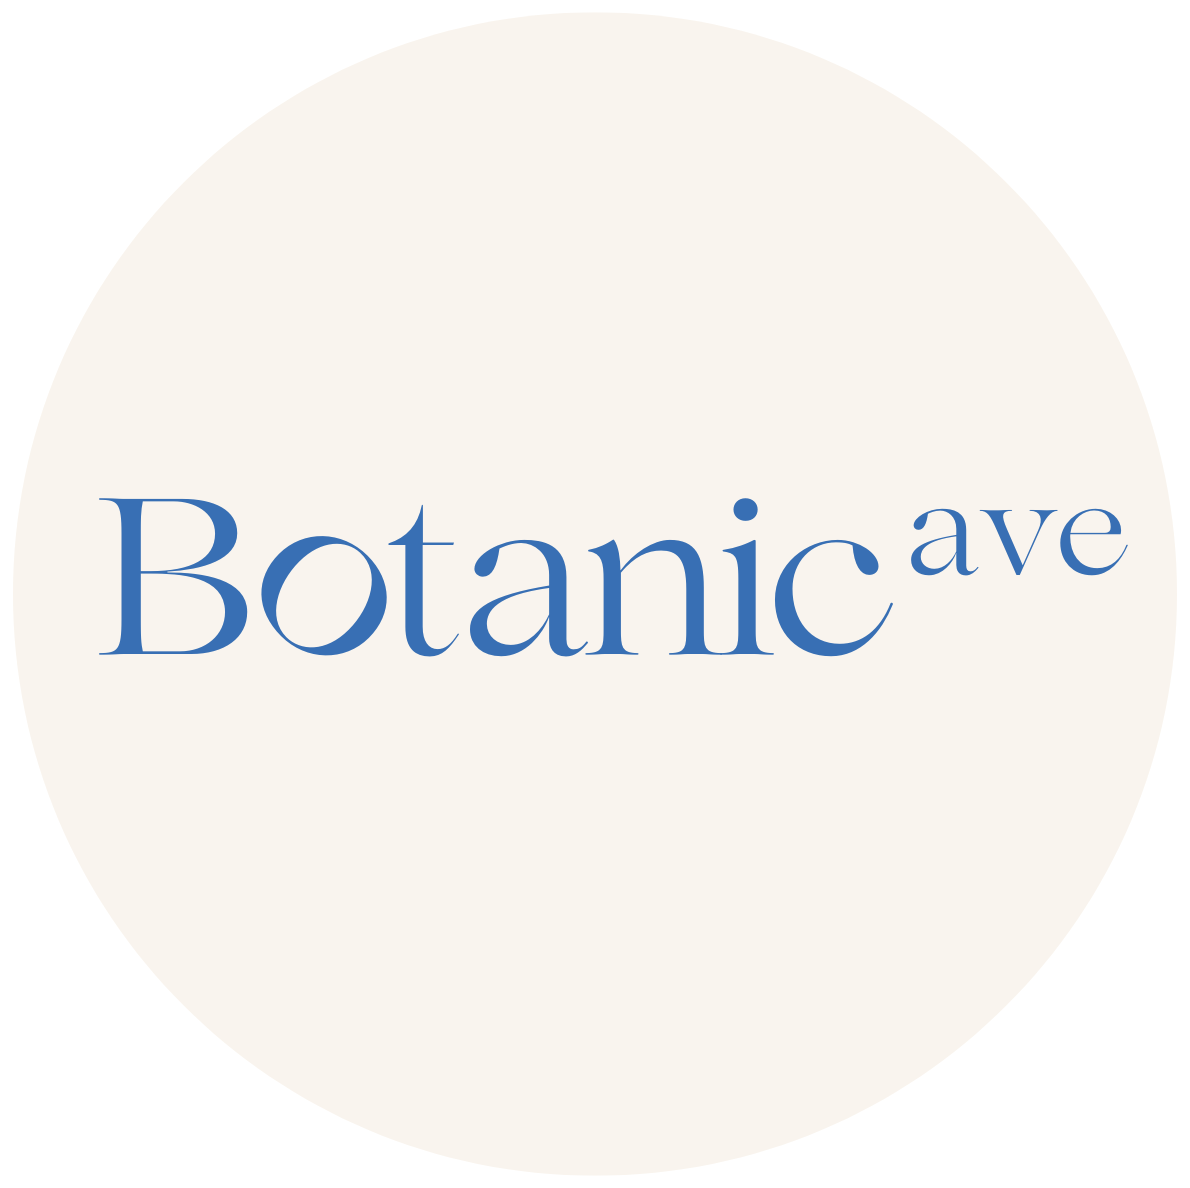 Botanic Ave.